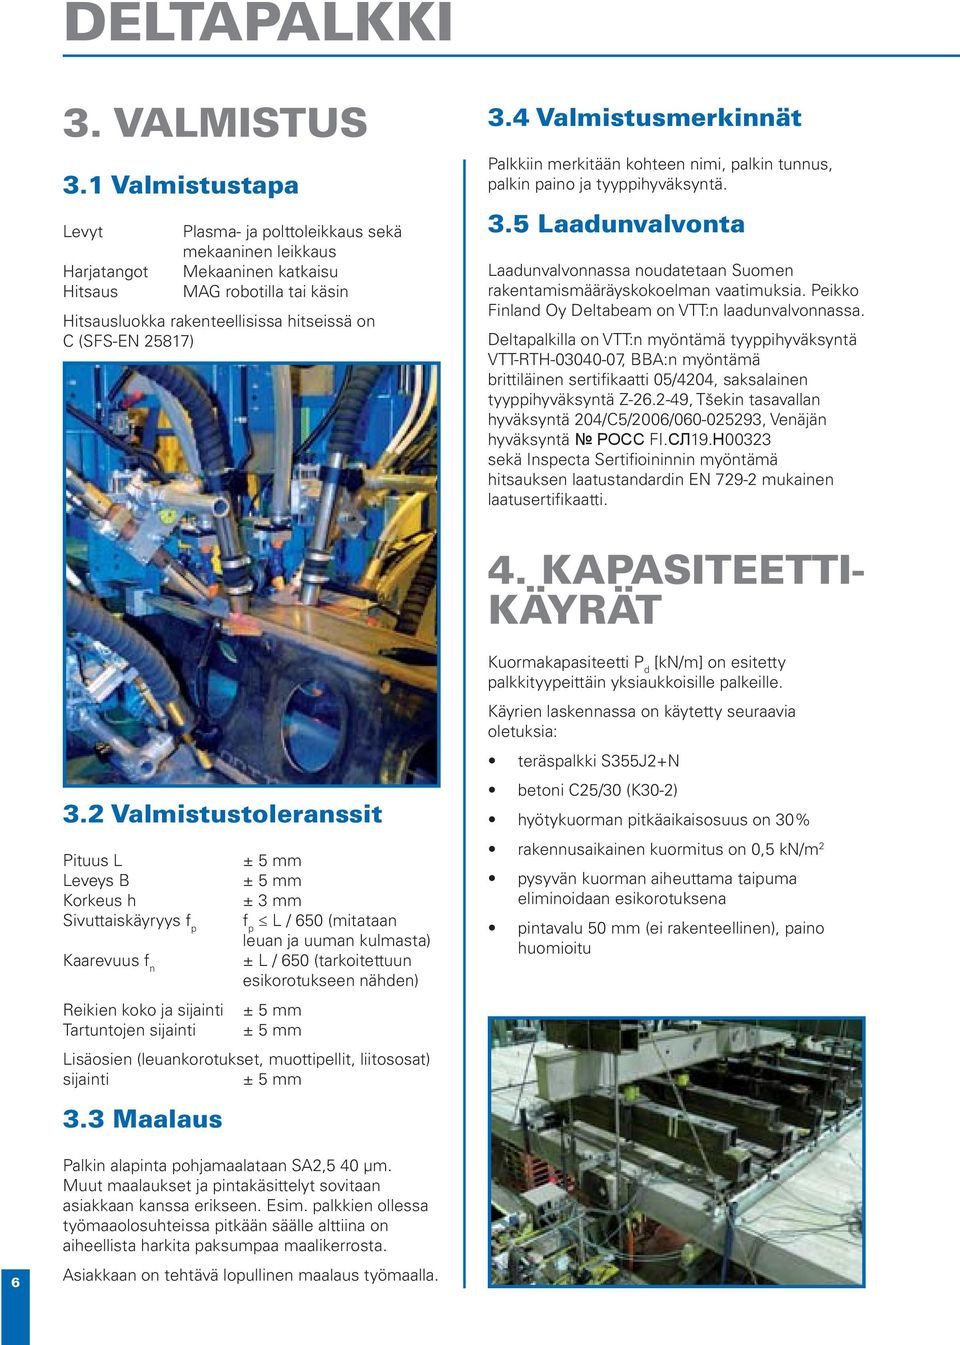 4 Valmistusmerkinnät Palkkiin merkitään kohteen nimi, palkin tunnus, palkin paino ja tyyppihyväksyntä. 3.5 Laadunvalvonta Laadunvalvonnassa noudatetaan Suomen rakentamismääräyskokoelman vaatimuksia.